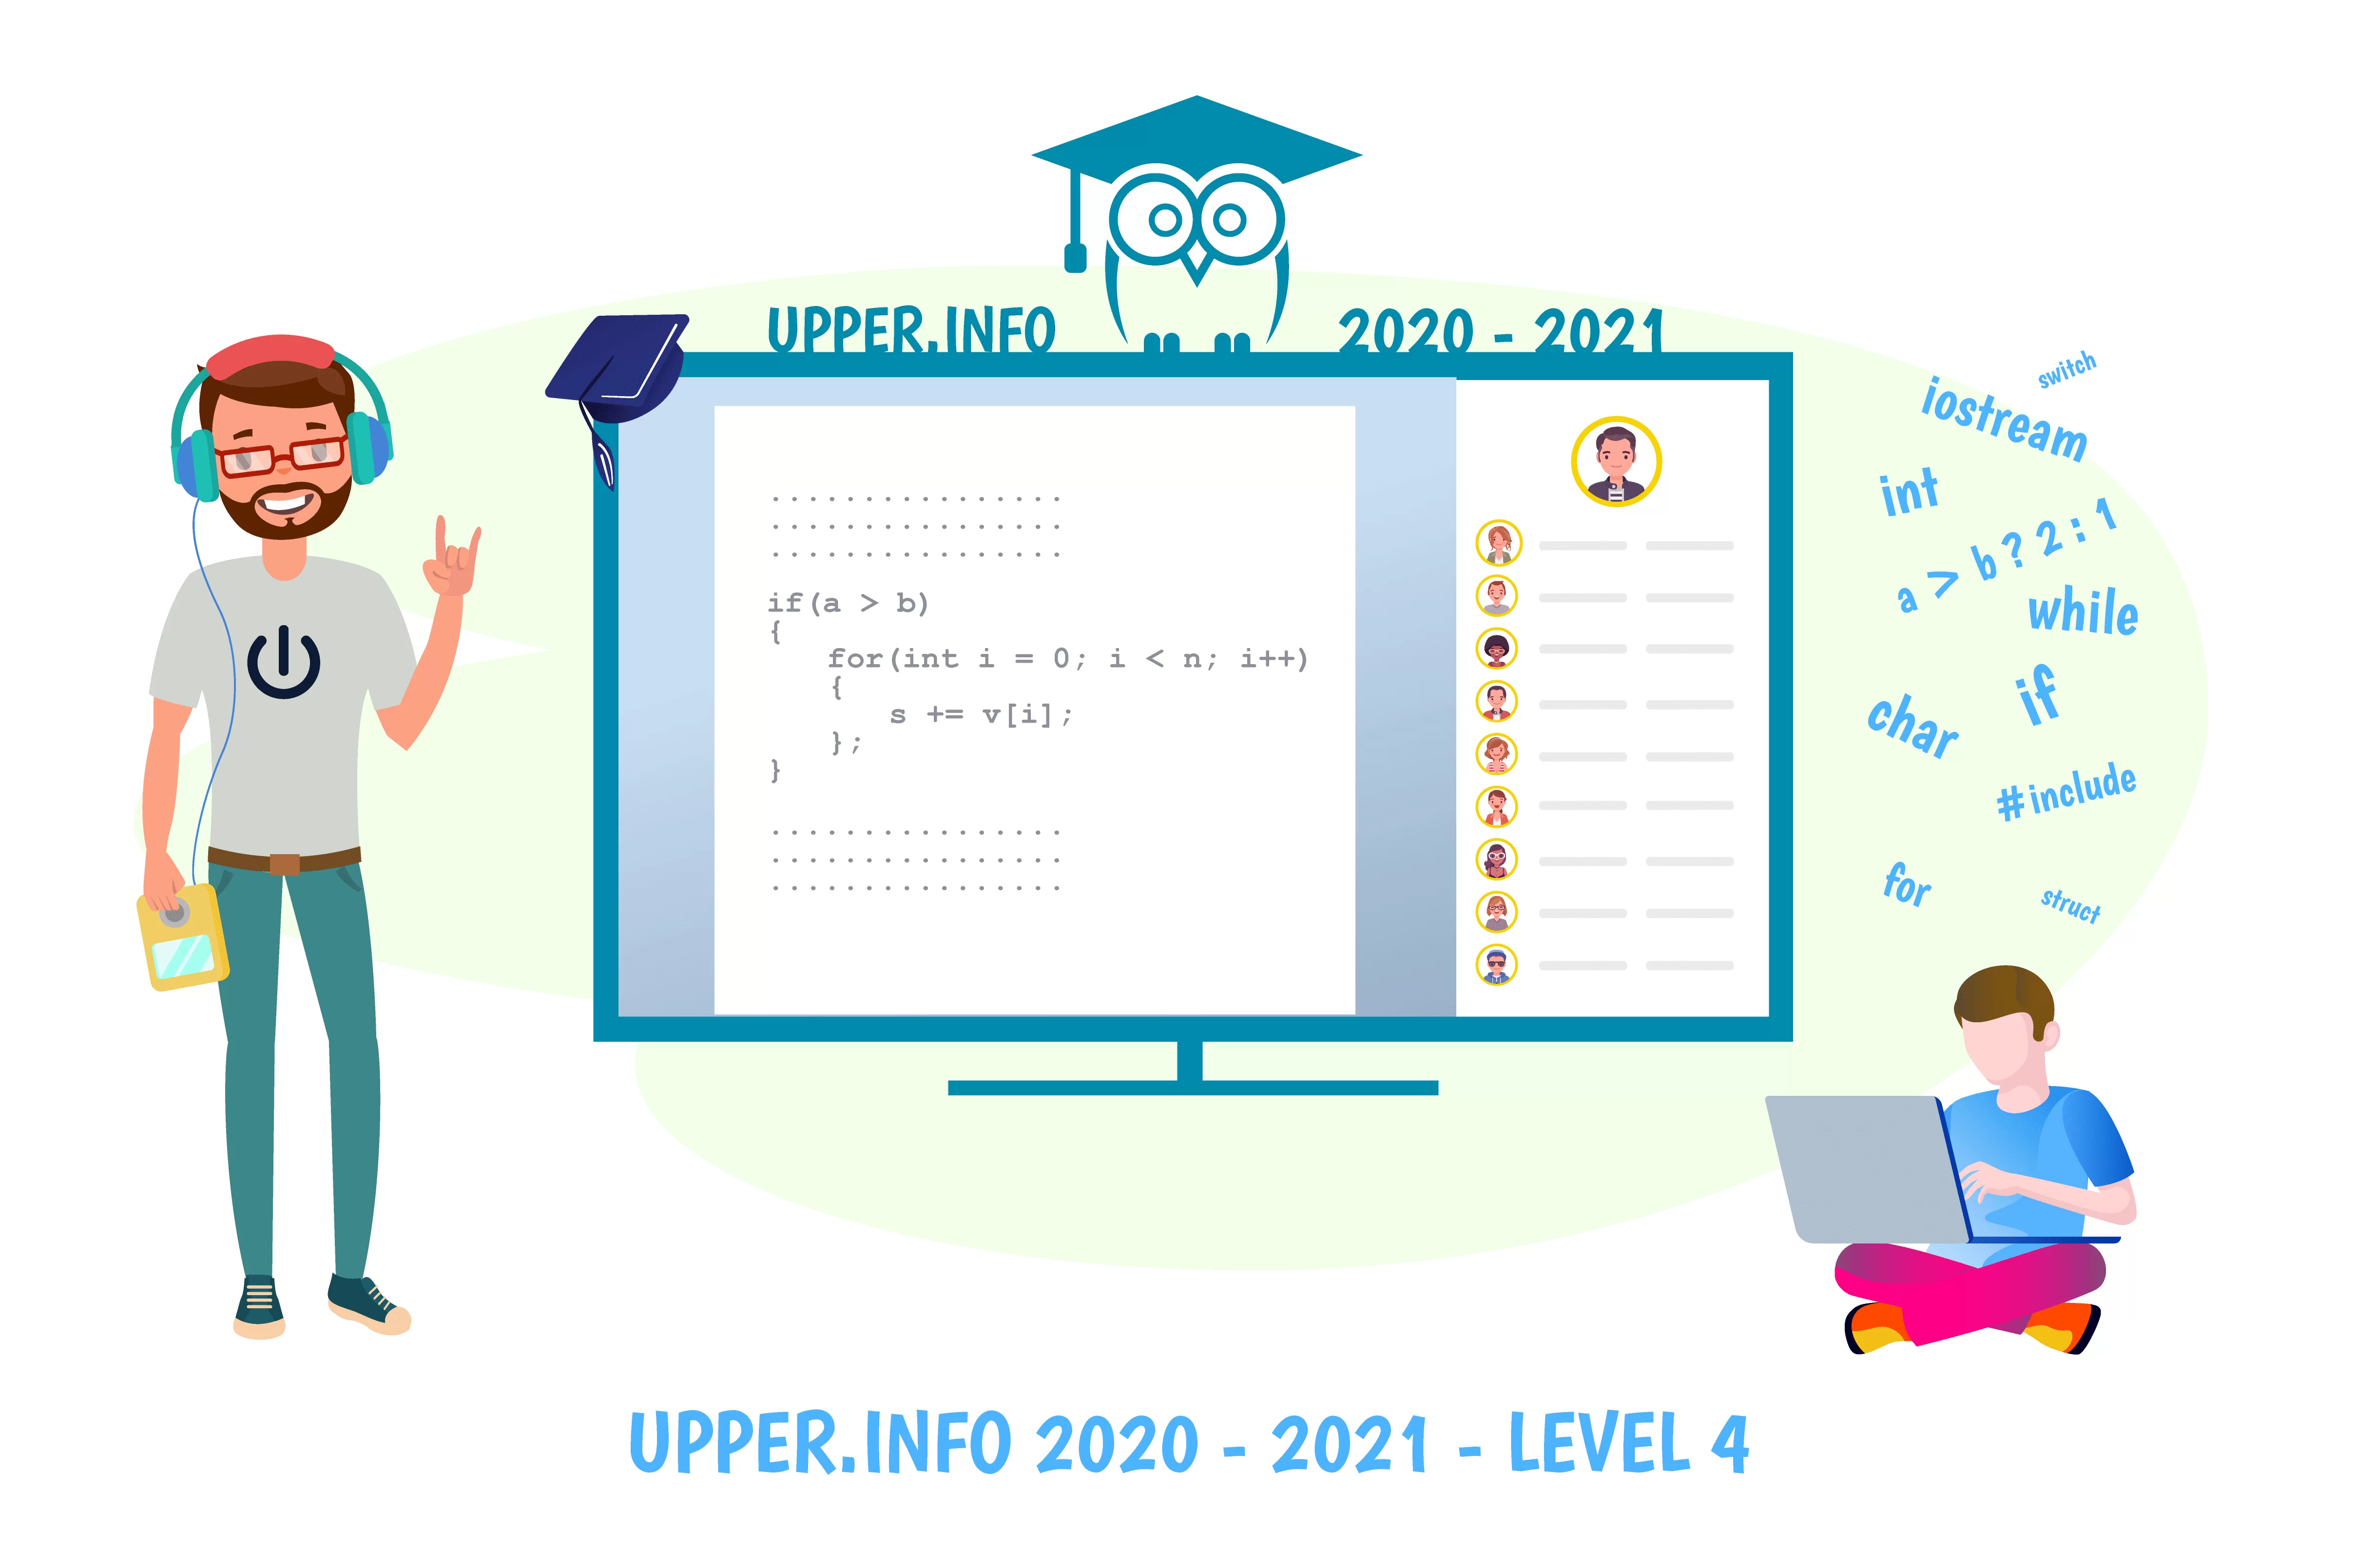 Upper.Info 2020-2021, Level 4